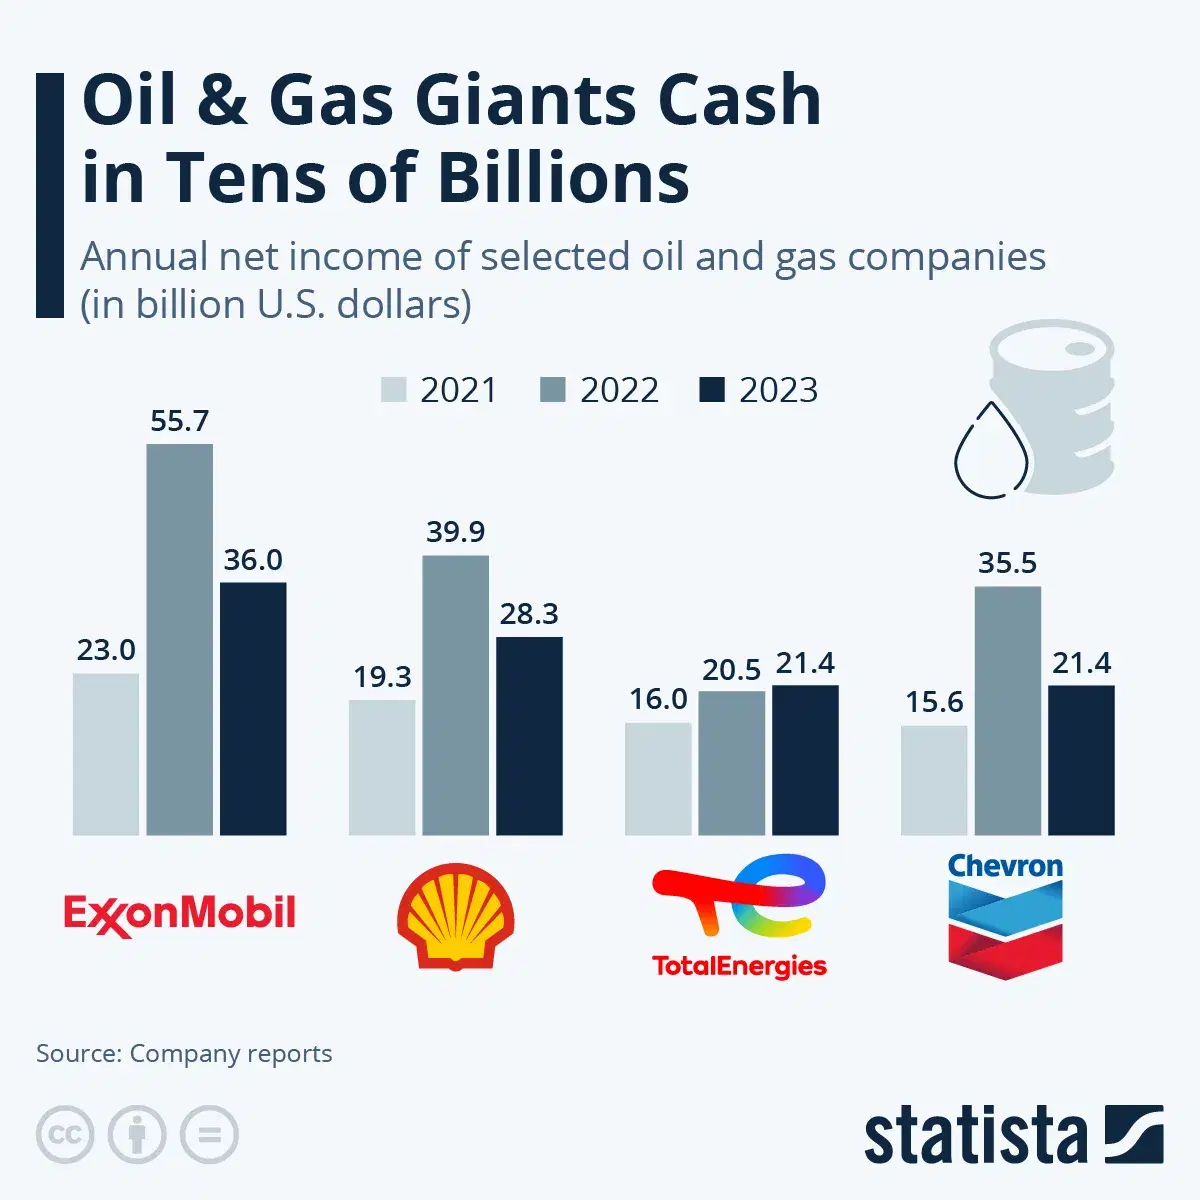 Oil & Gas Giants Cash in Tens of Billions